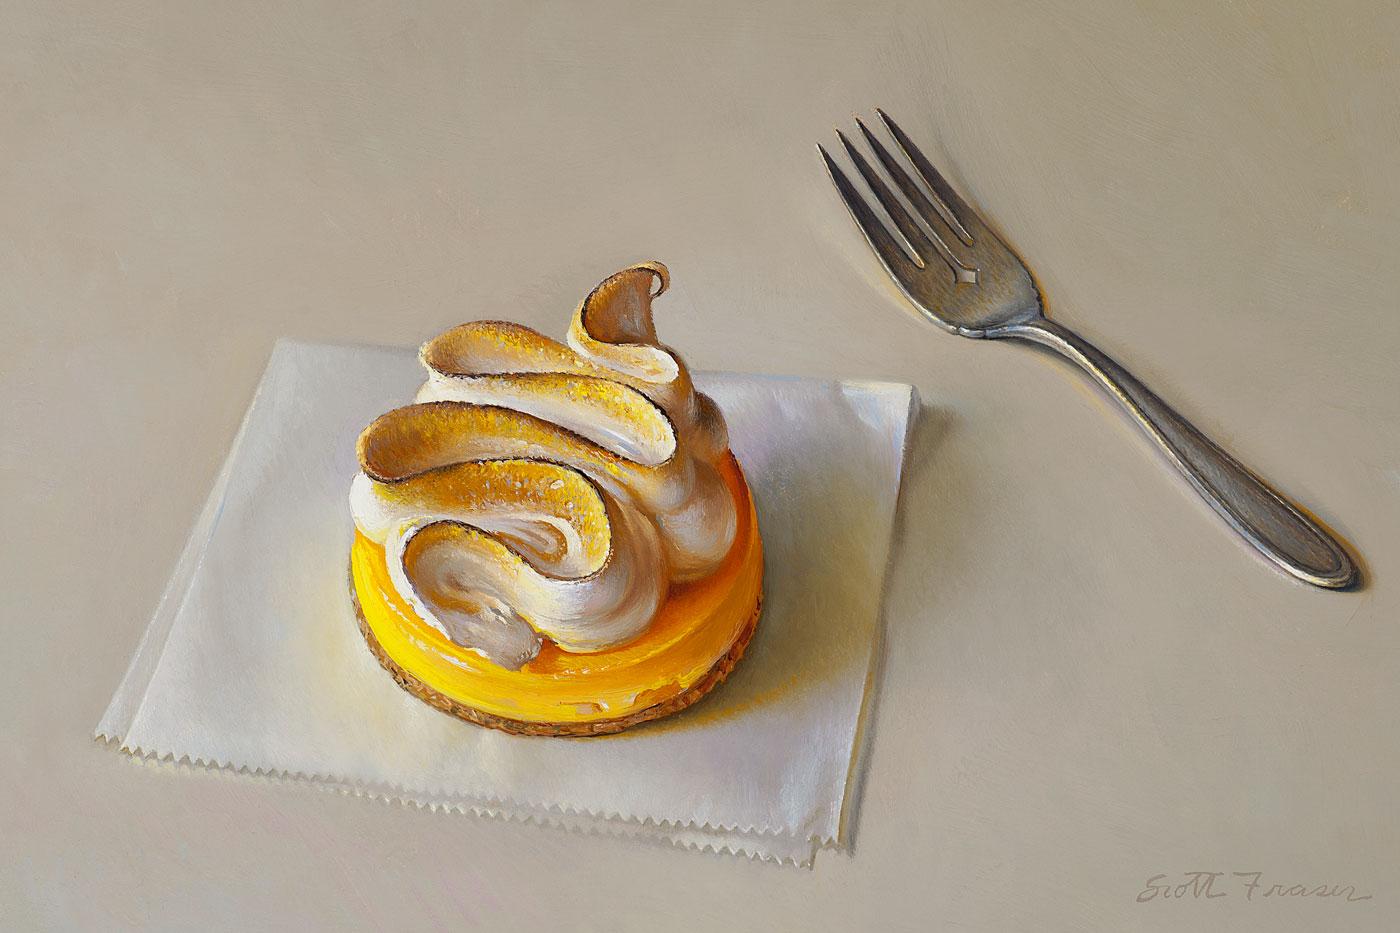 Scott Fraser realism painting Lemon Meringue